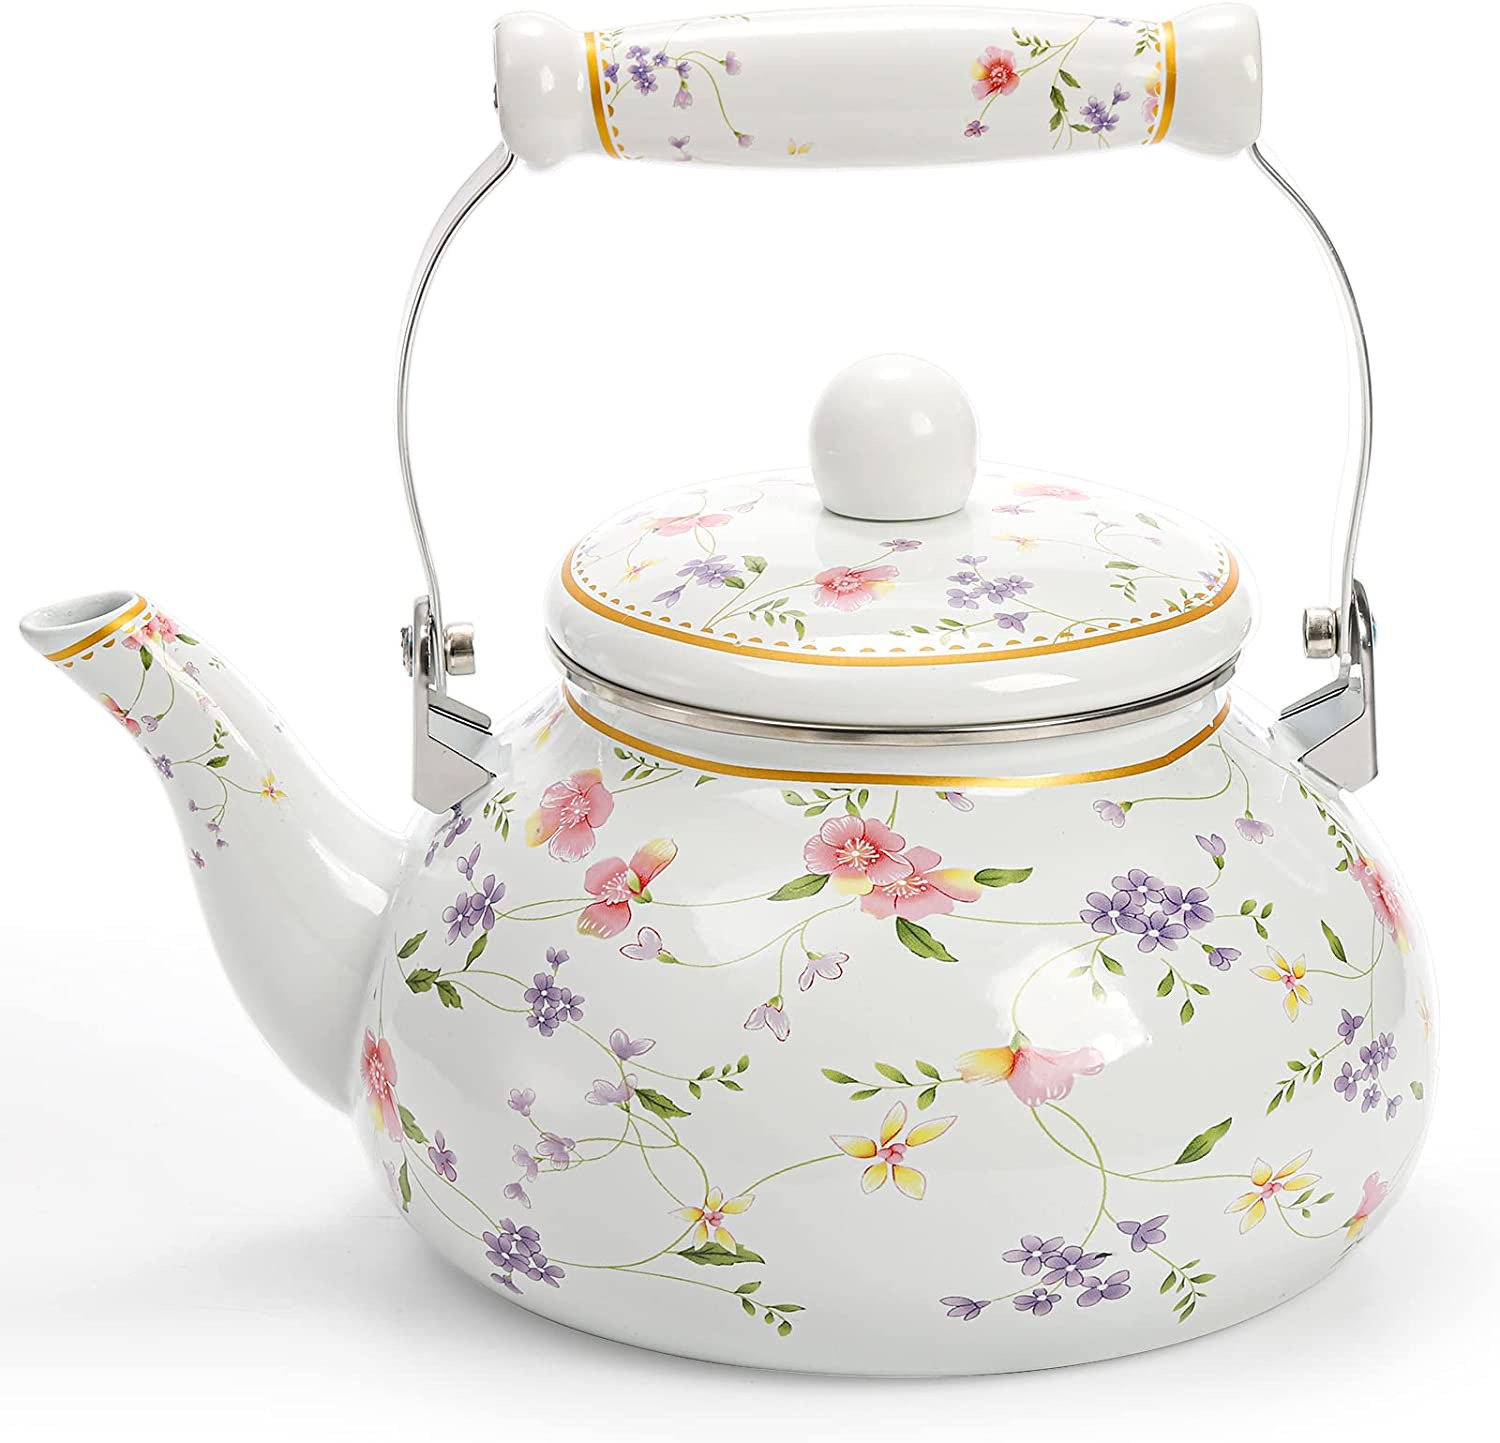 Vintage Enamel Tea Kettle, 2.6 Quart Floral Enamel on Steel Water Kettle Teapot 